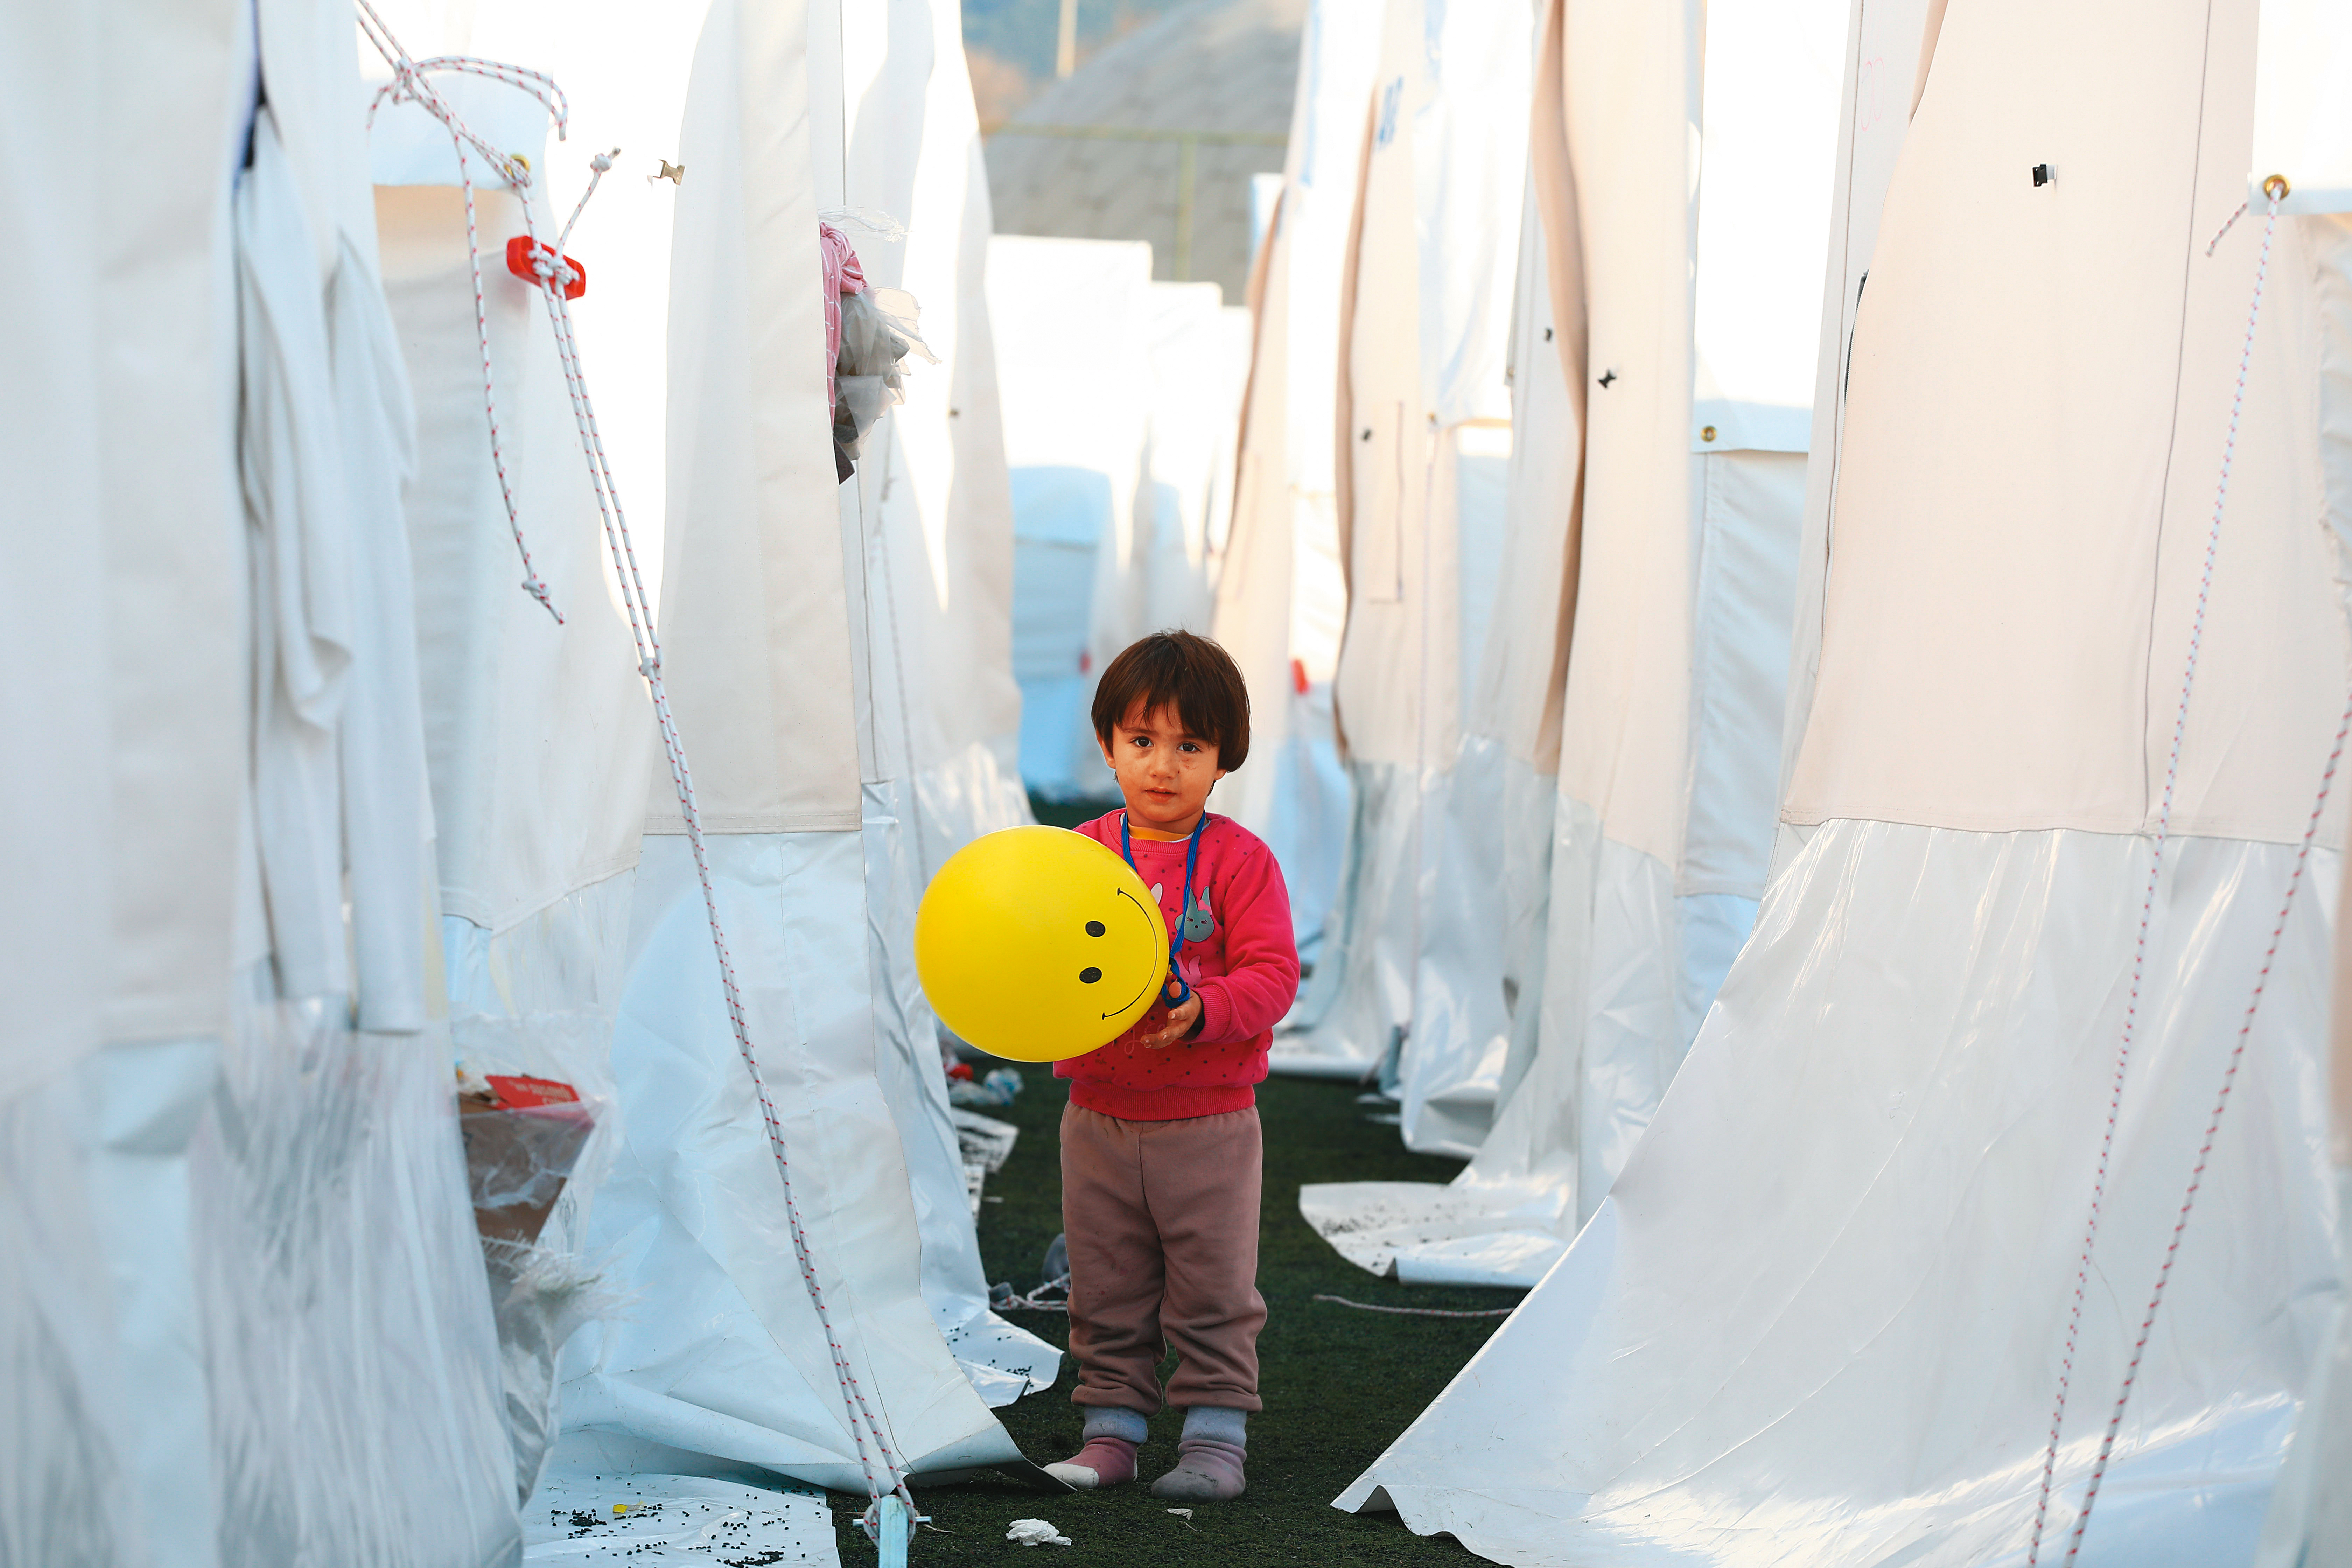 紅衣男童持黃色氣球穿梭玩樂，與白色帳篷形成強烈對比。